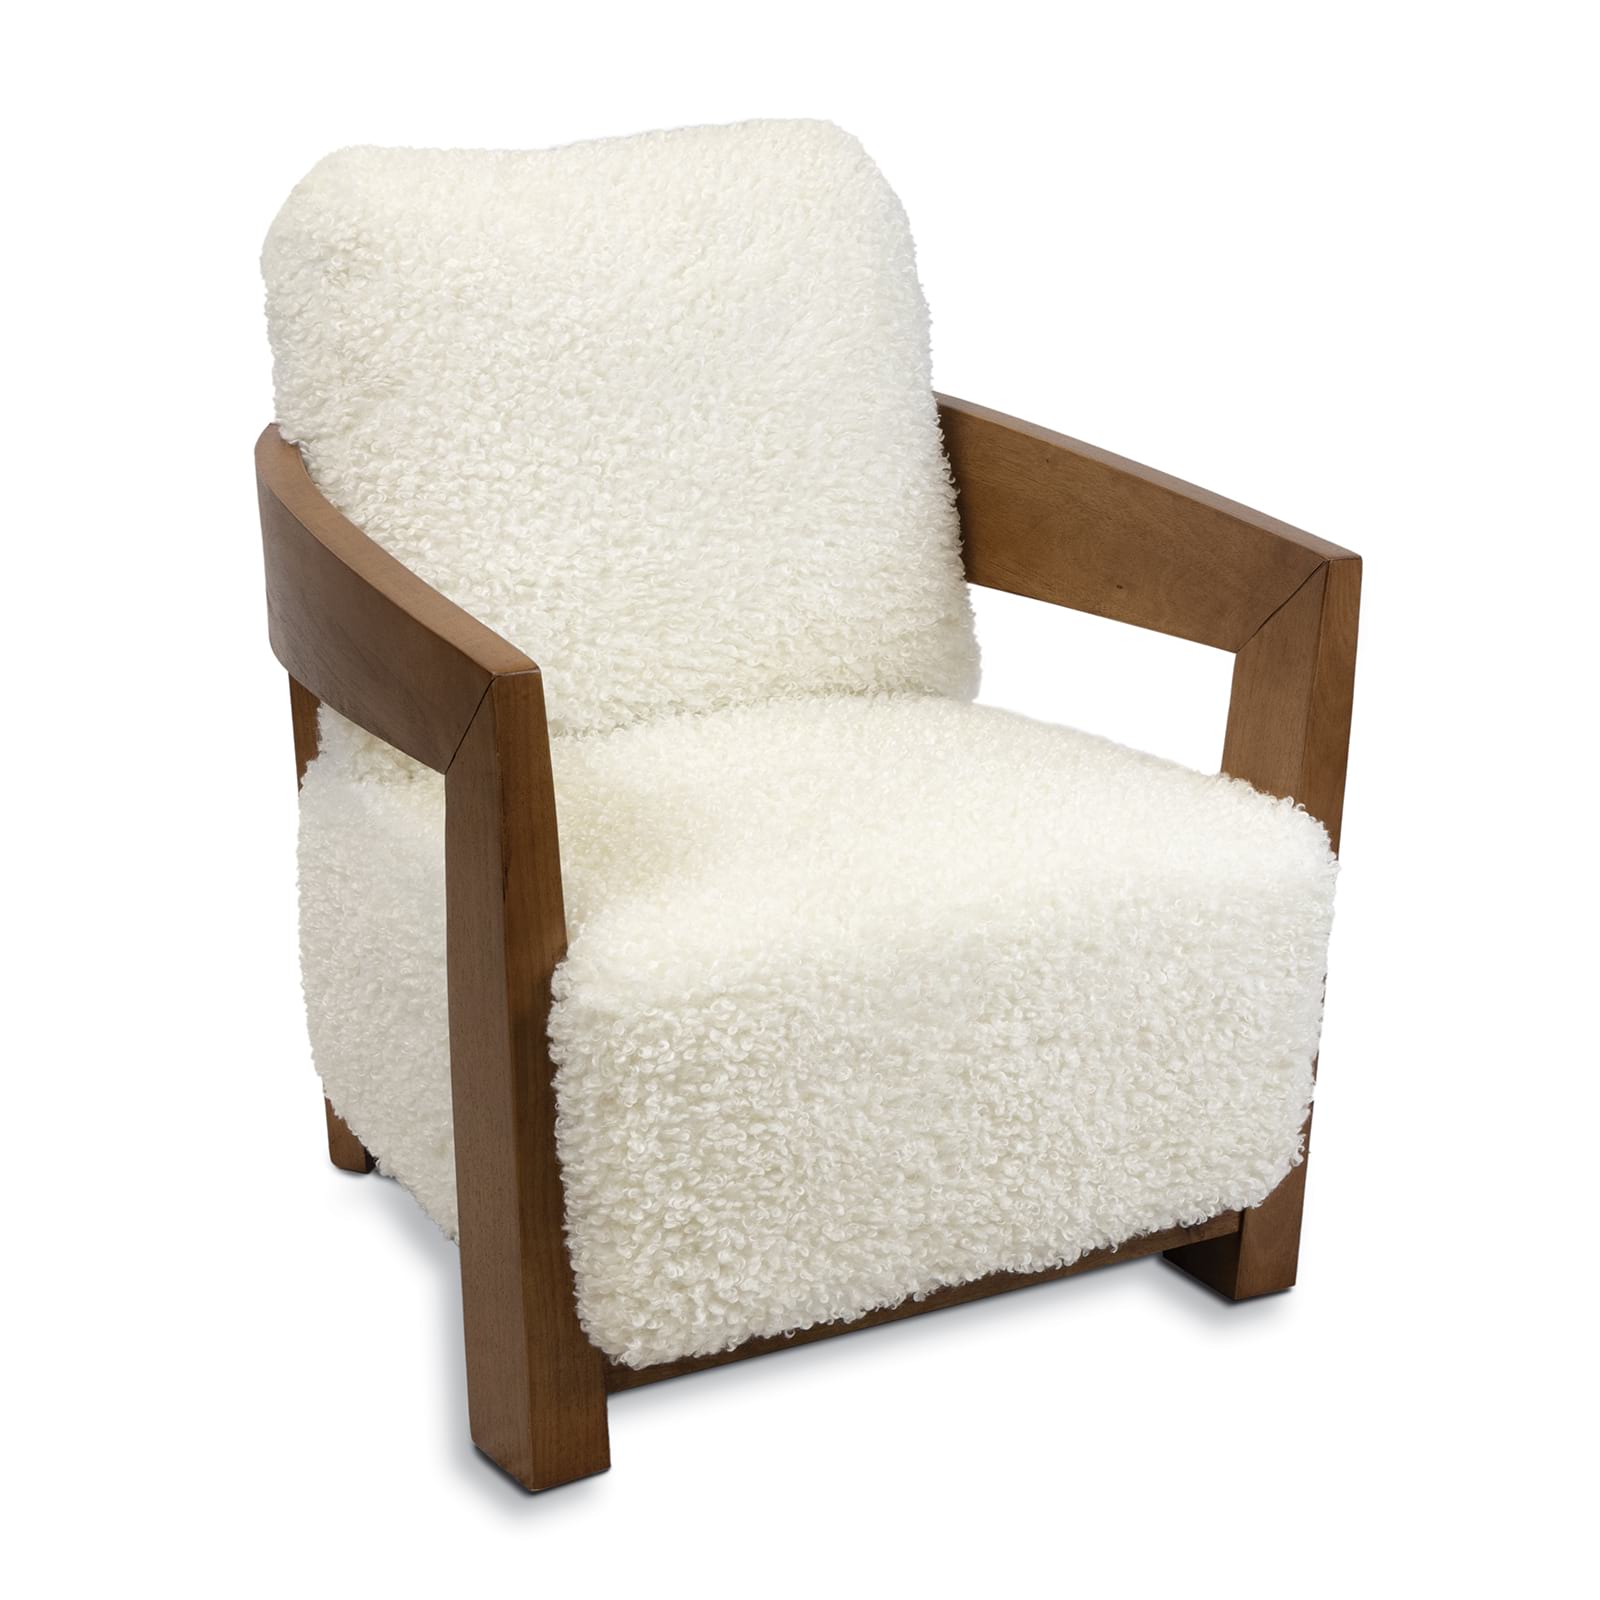 Sherpa Shearling Wool Chair